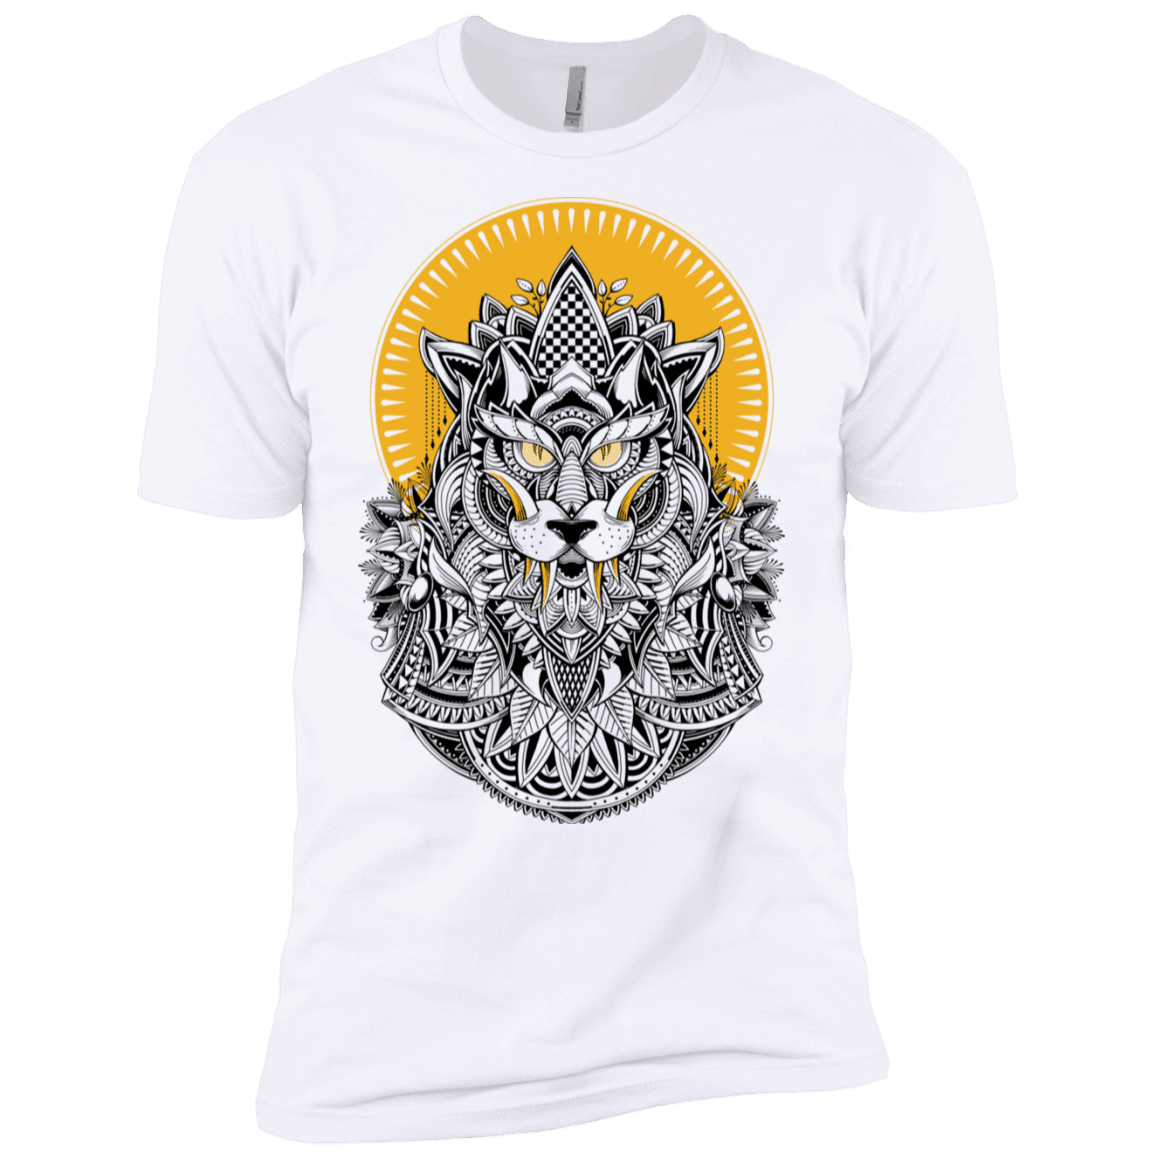 T-Shirts White / X-Small Alpha Wolf Men's Premium T-Shirt